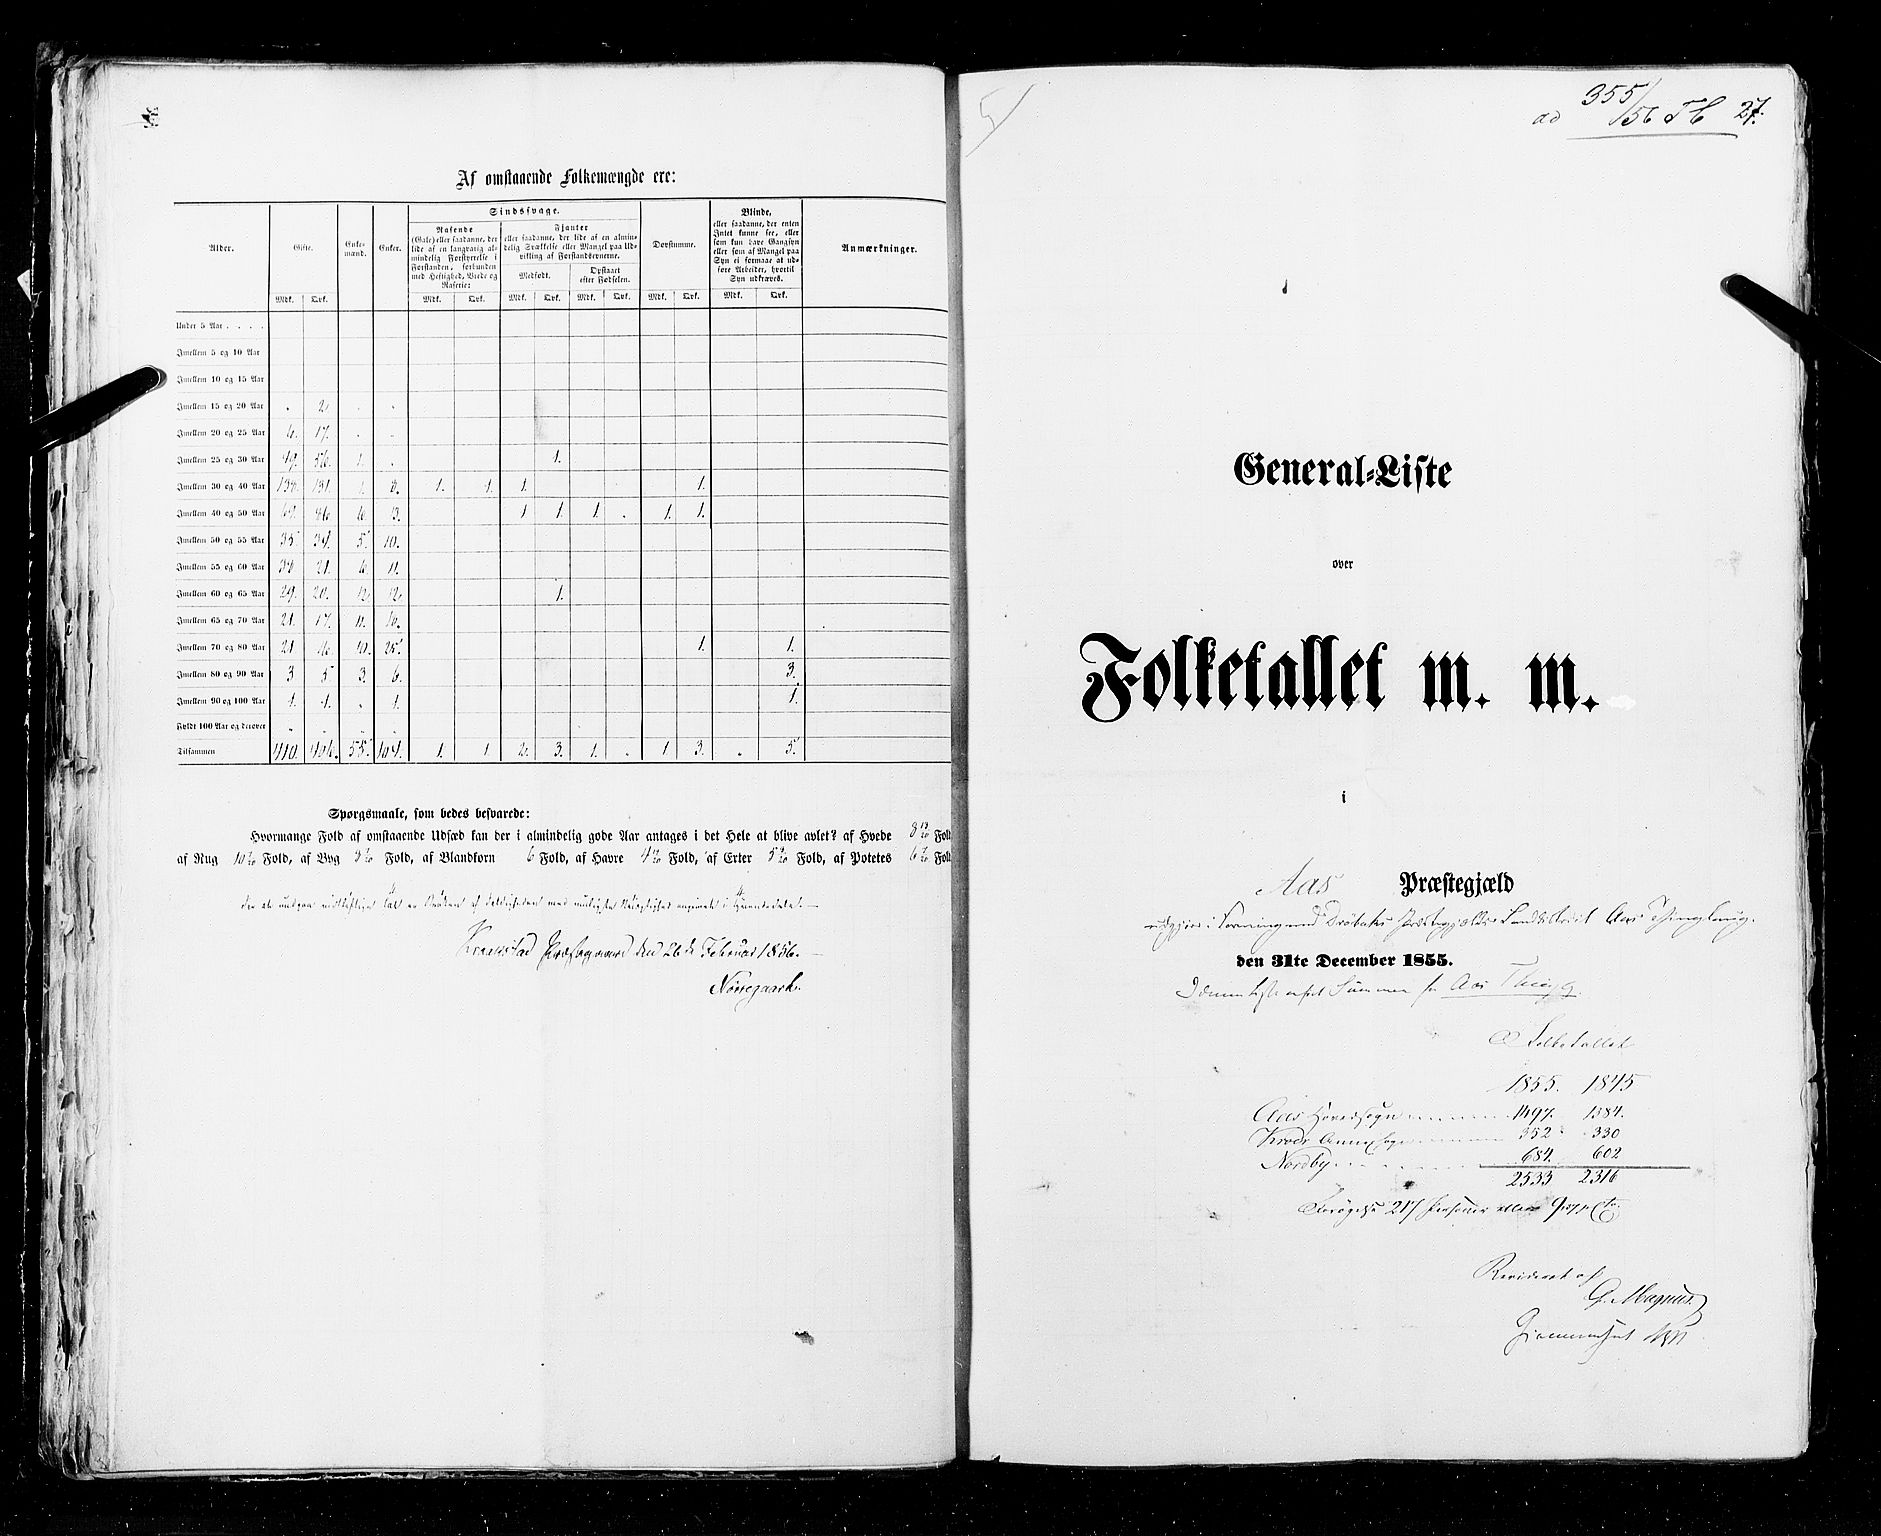 RA, Census 1855, vol. 1: Akershus amt, Smålenenes amt og Hedemarken amt, 1855, p. 27